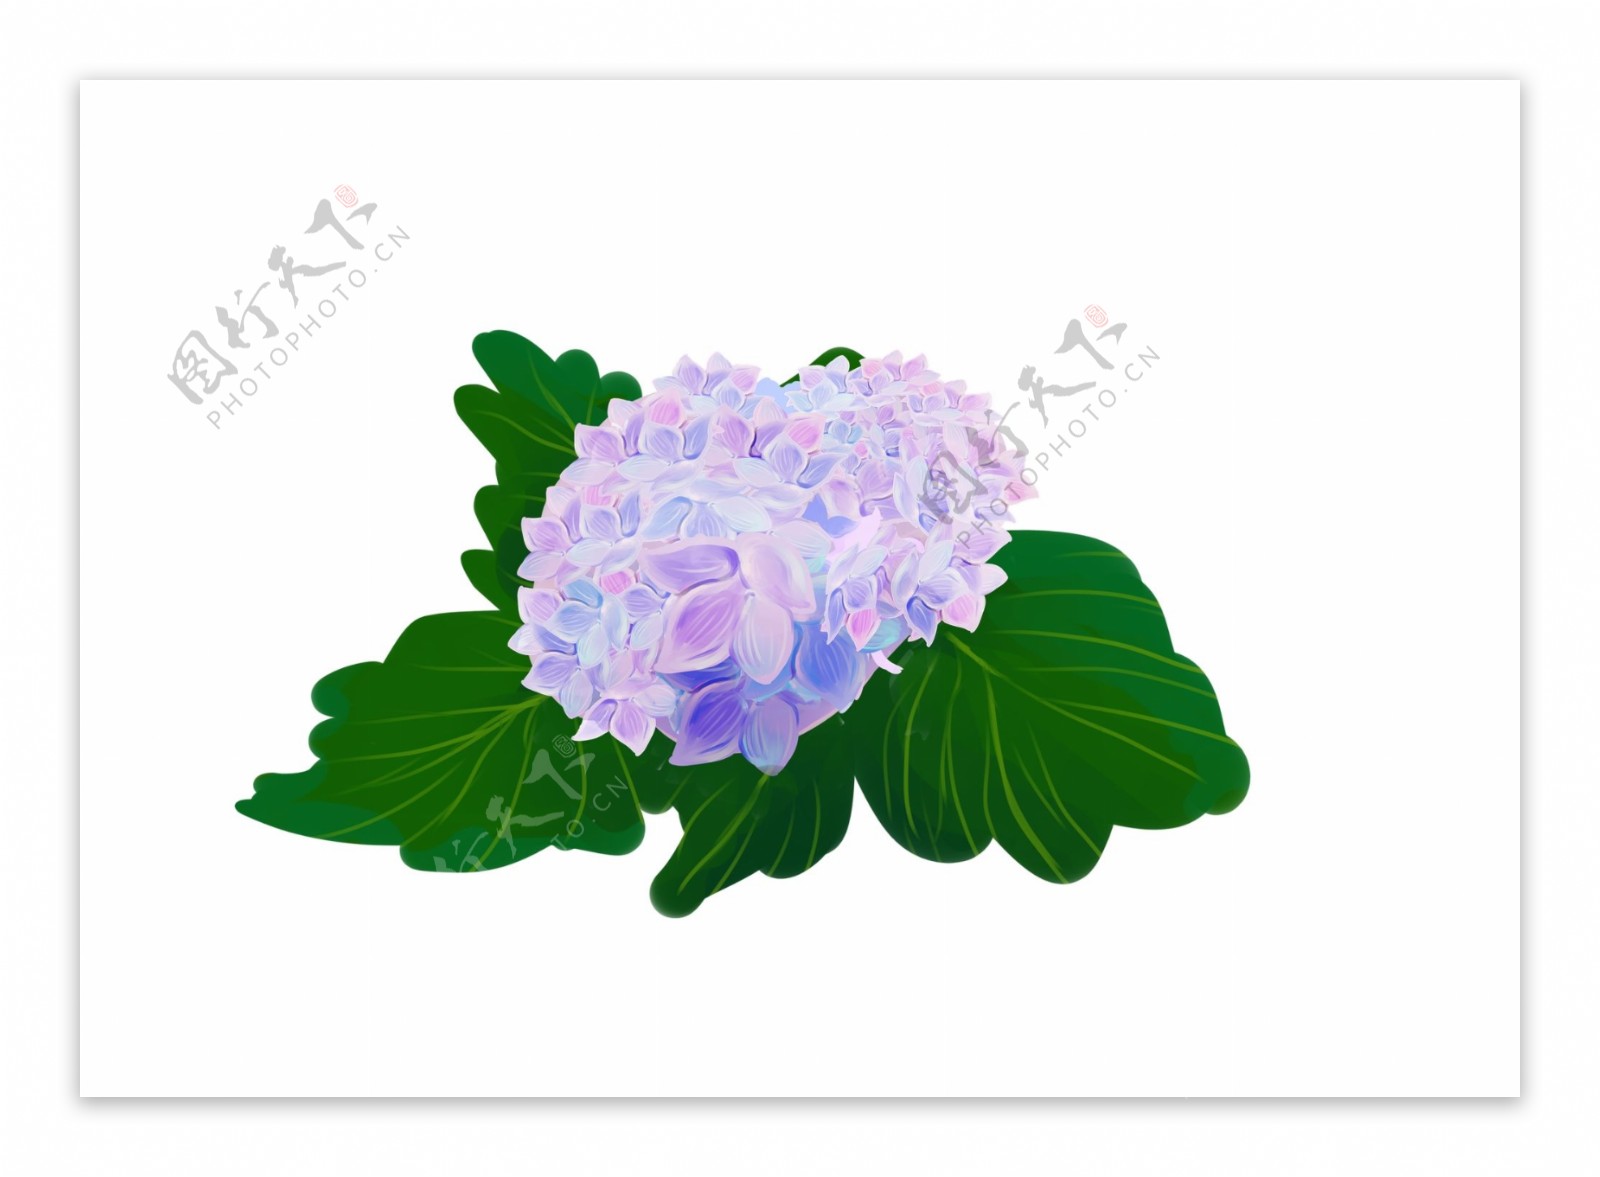 手绘紫色绣球花装饰图案